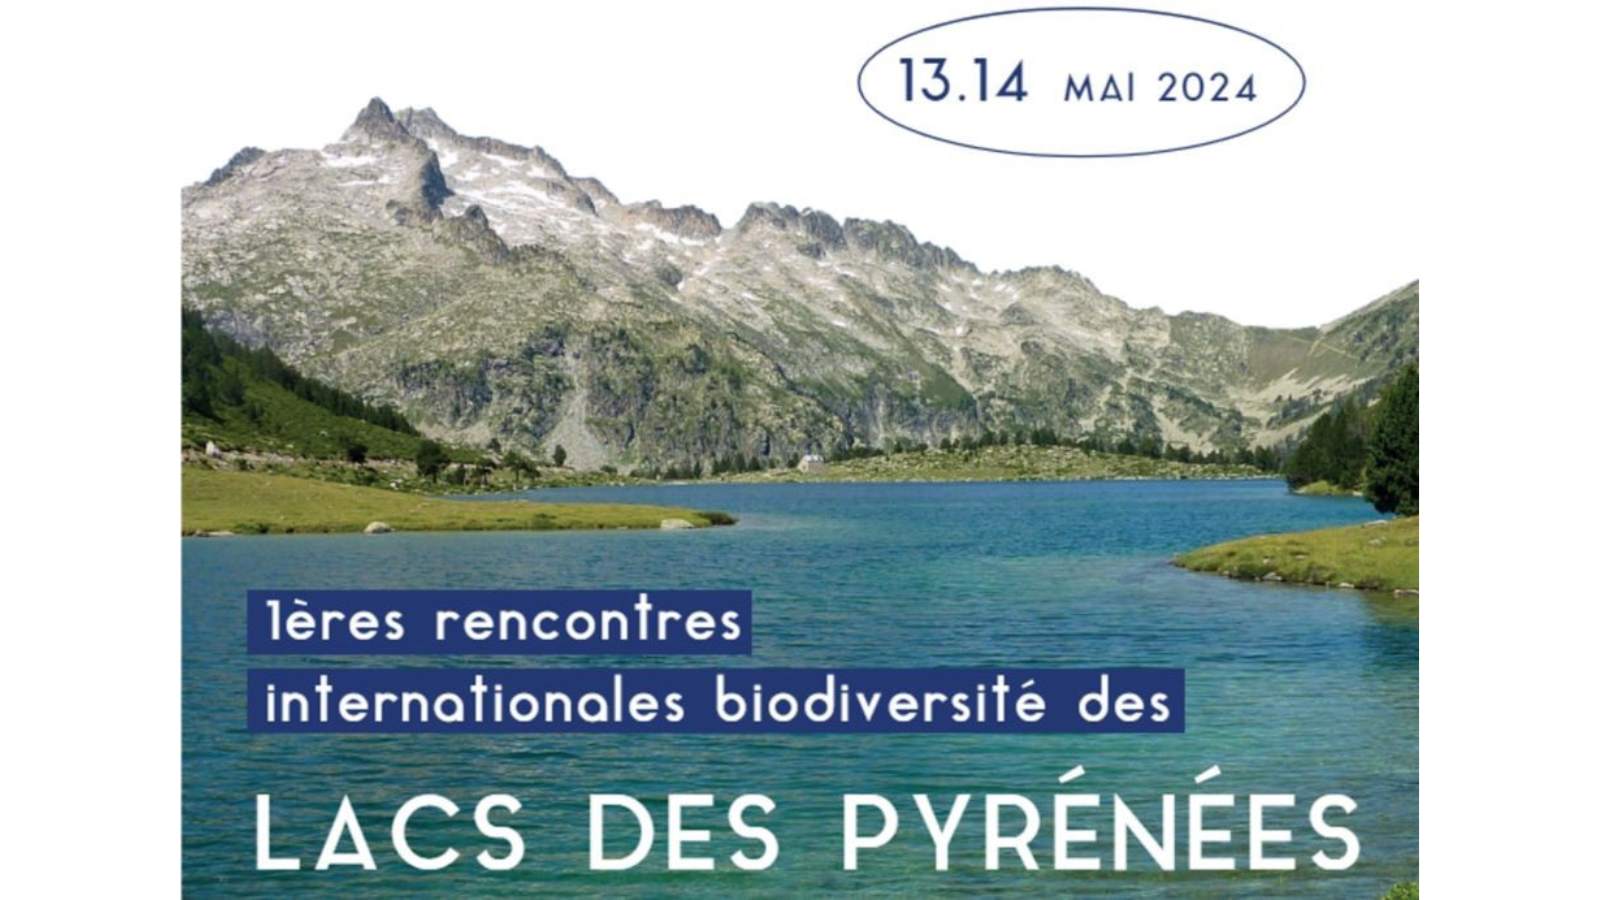 Primera reunión internacional de biodiversidad de los lagos pirenaicos